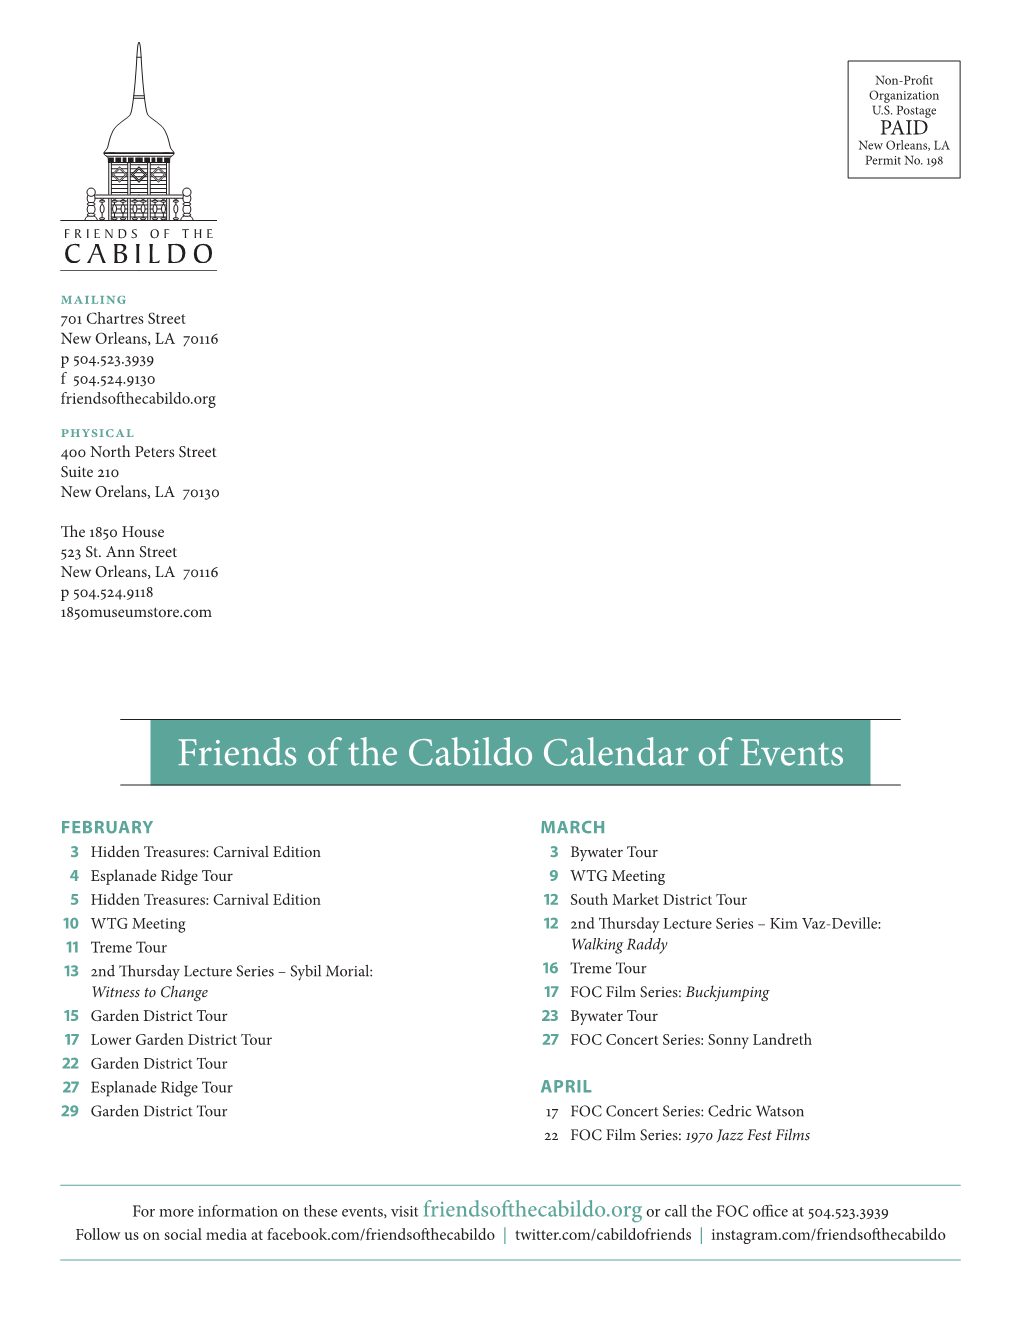 Friends of the Cabildo Calendar of Events